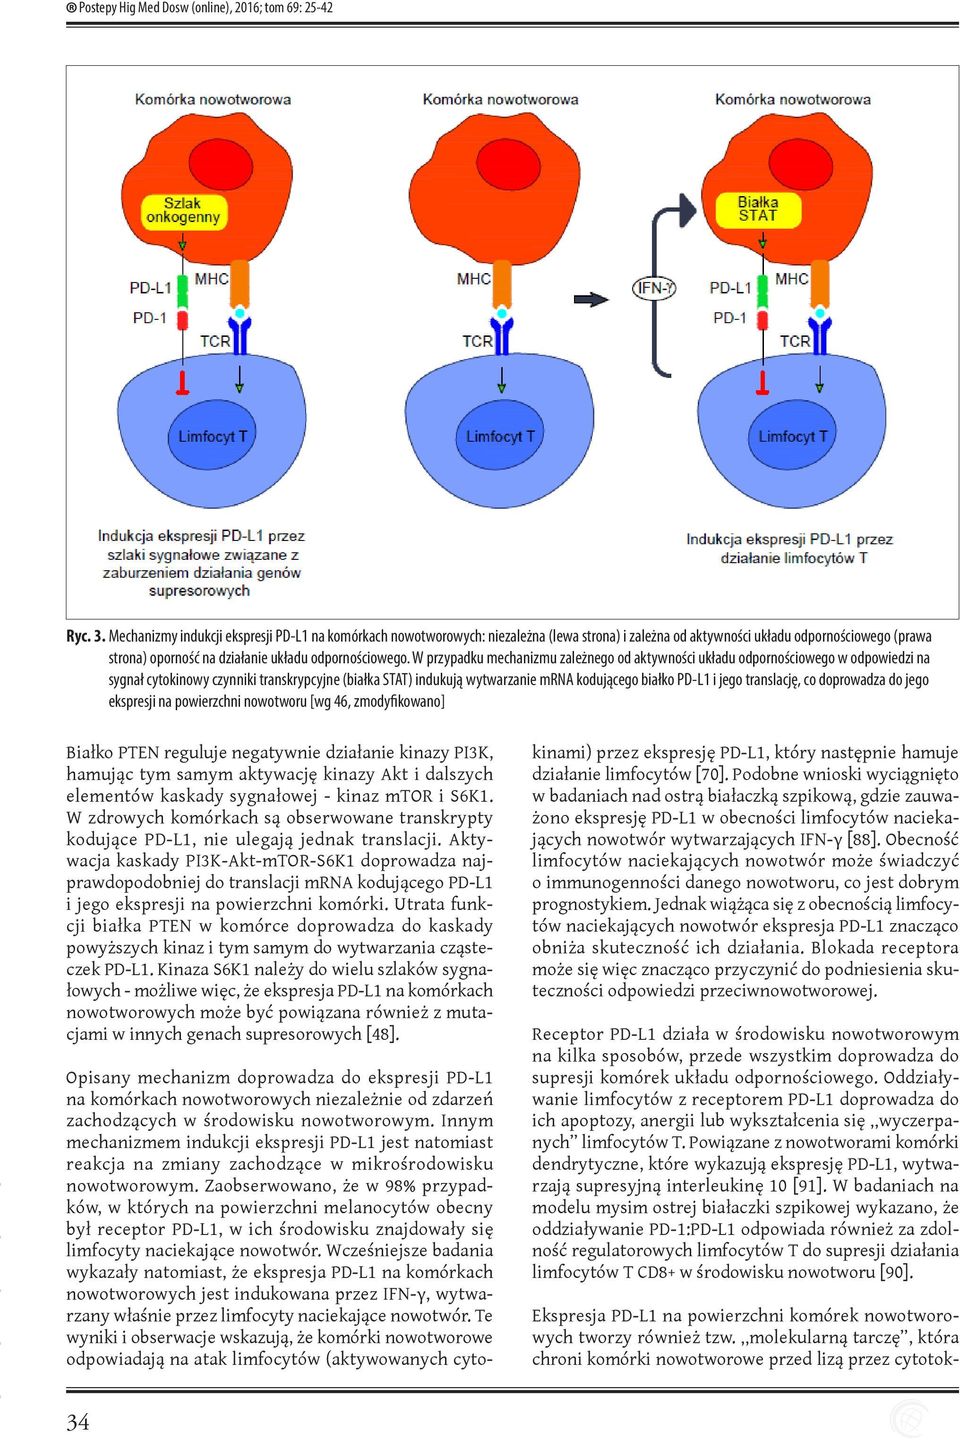 W przypadku mechanizmu zależnego od aktywności układu odpornościowego w odpowiedzi na sygnał cytokinowy czynniki transkrypcyjne (białka STAT) indukują wytwarzanie mrna kodującego białko PD-L1 i jego